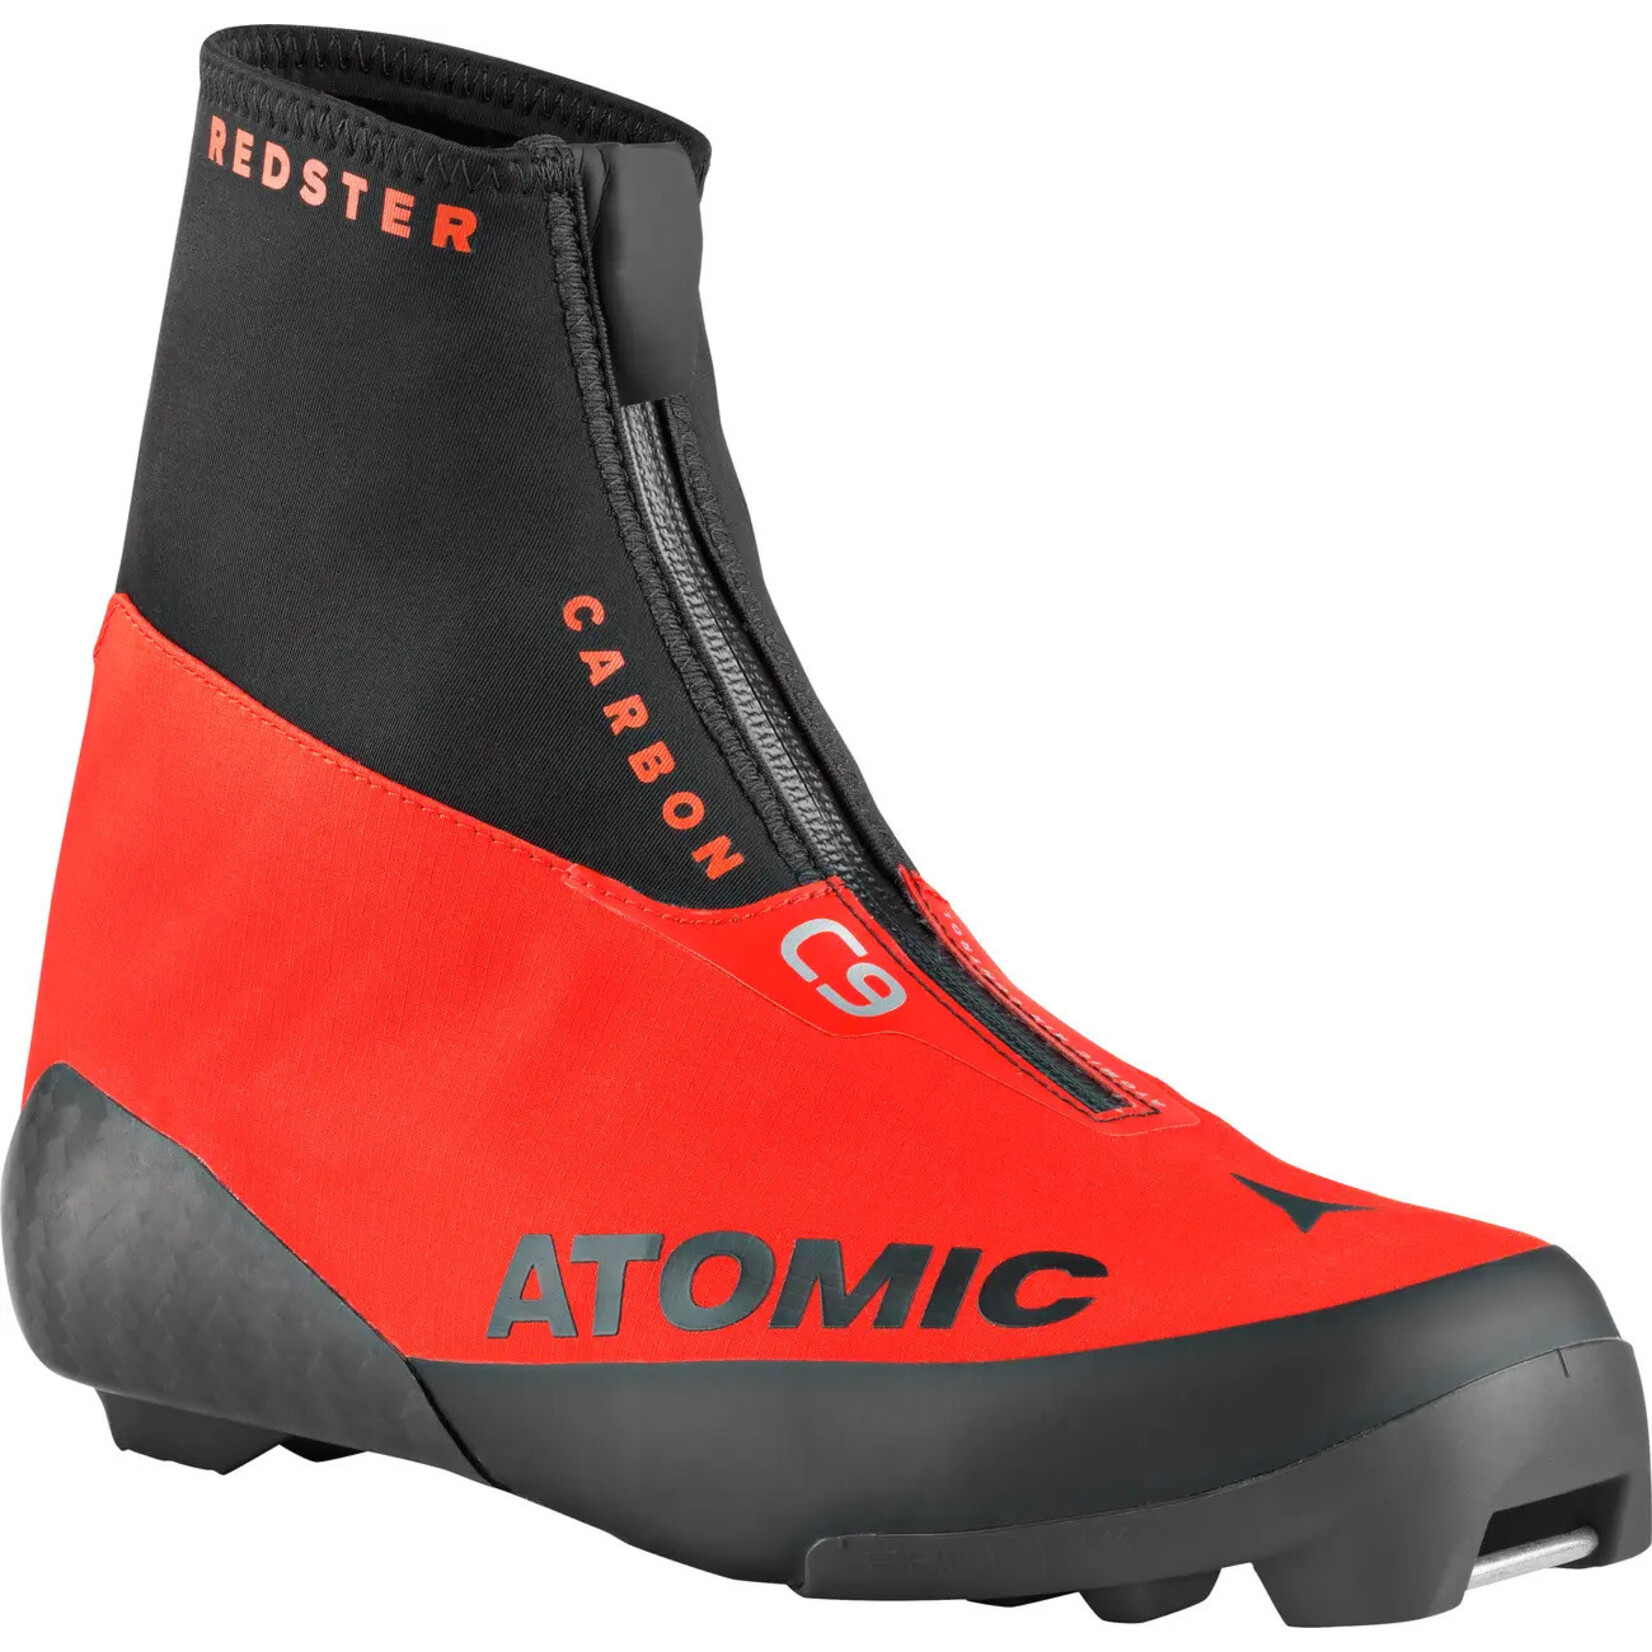 Atomic Redster C9 Carbon (Bottes de ski de fond classiques)